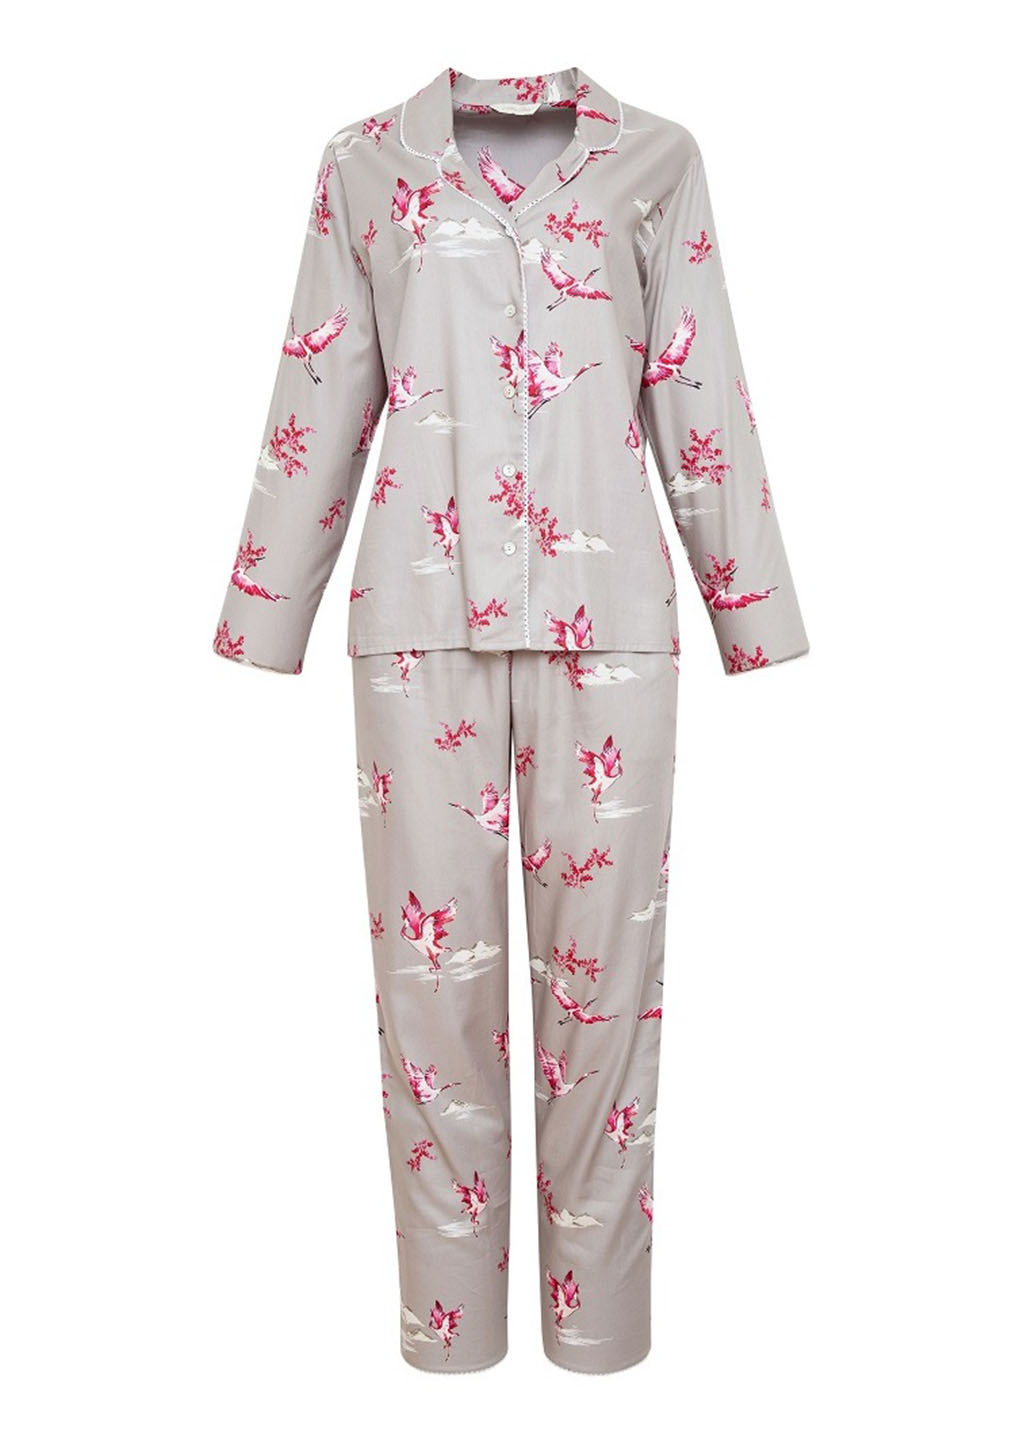 Серая всесезон пижама (рубашка, брюки) 1620 рубашка + брюки Nora Rose Katherine